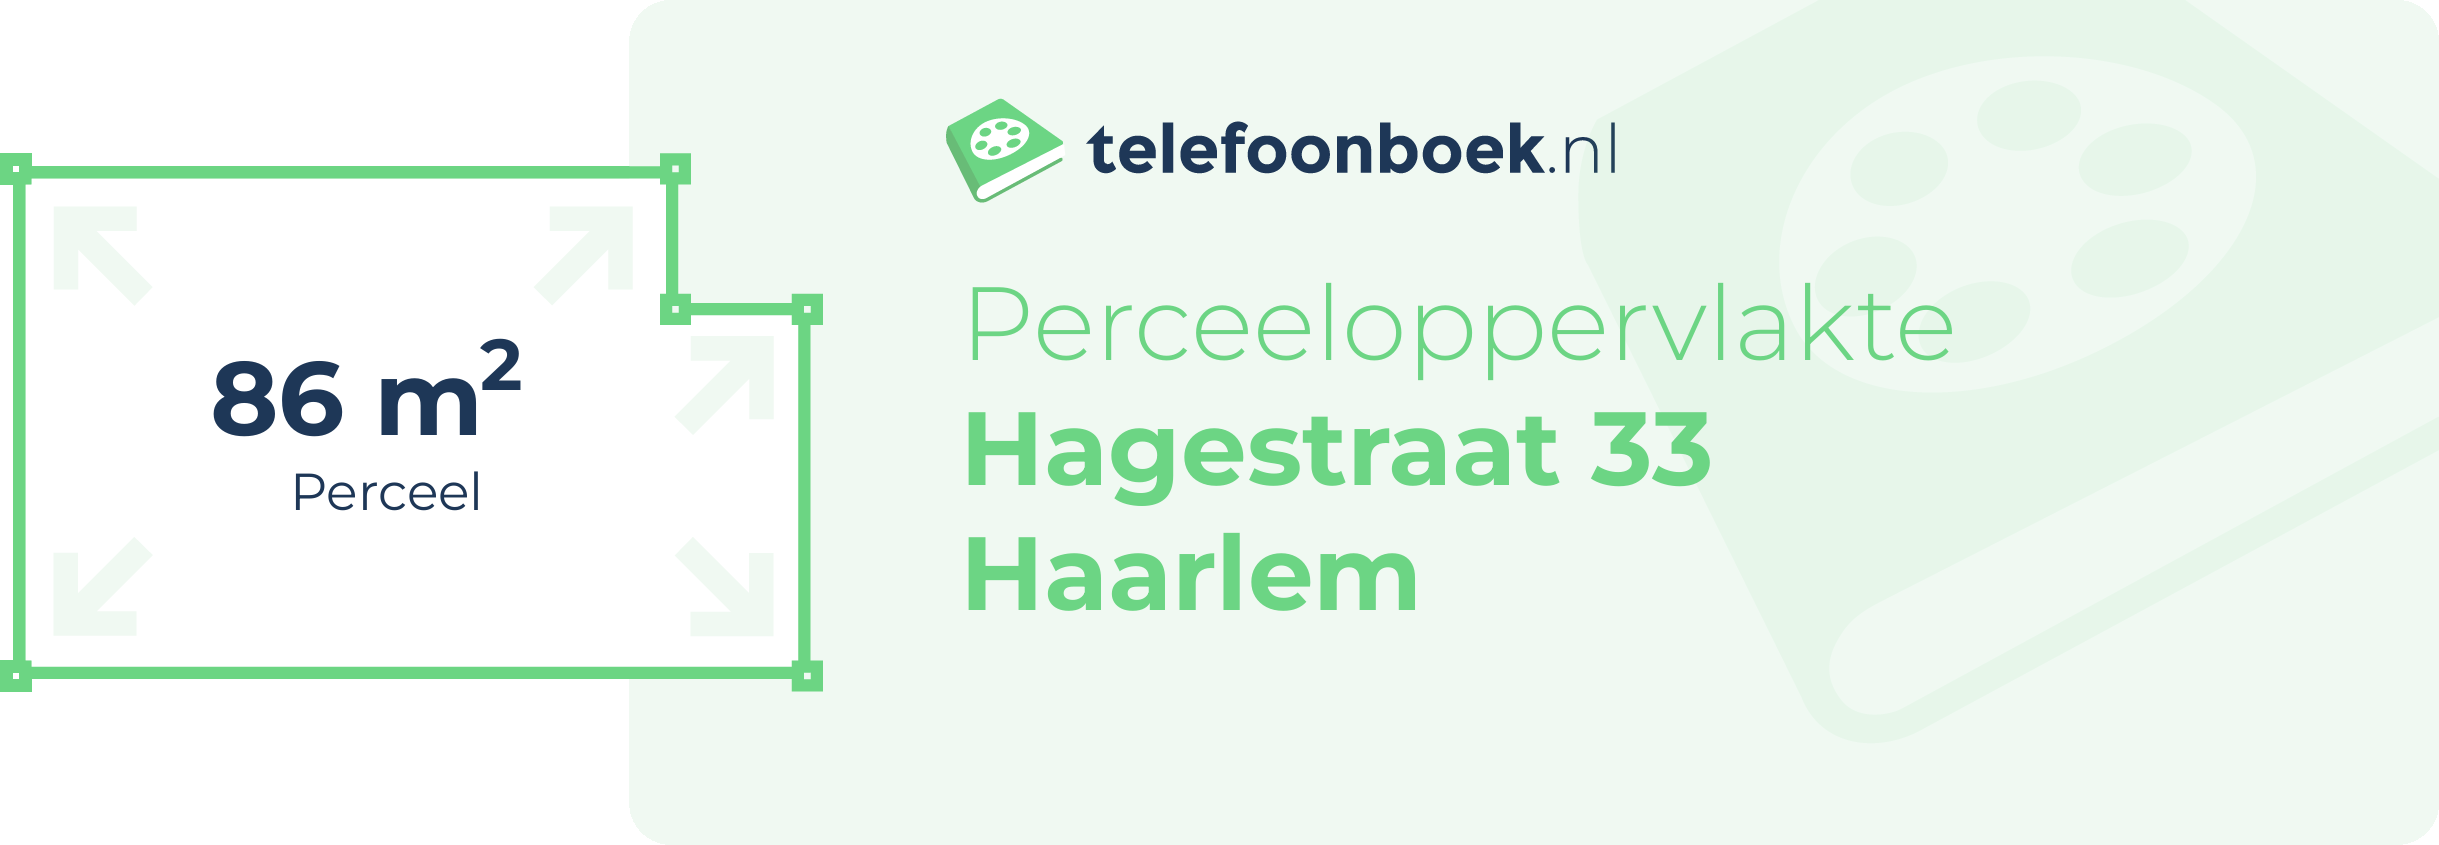 Perceeloppervlakte Hagestraat 33 Haarlem